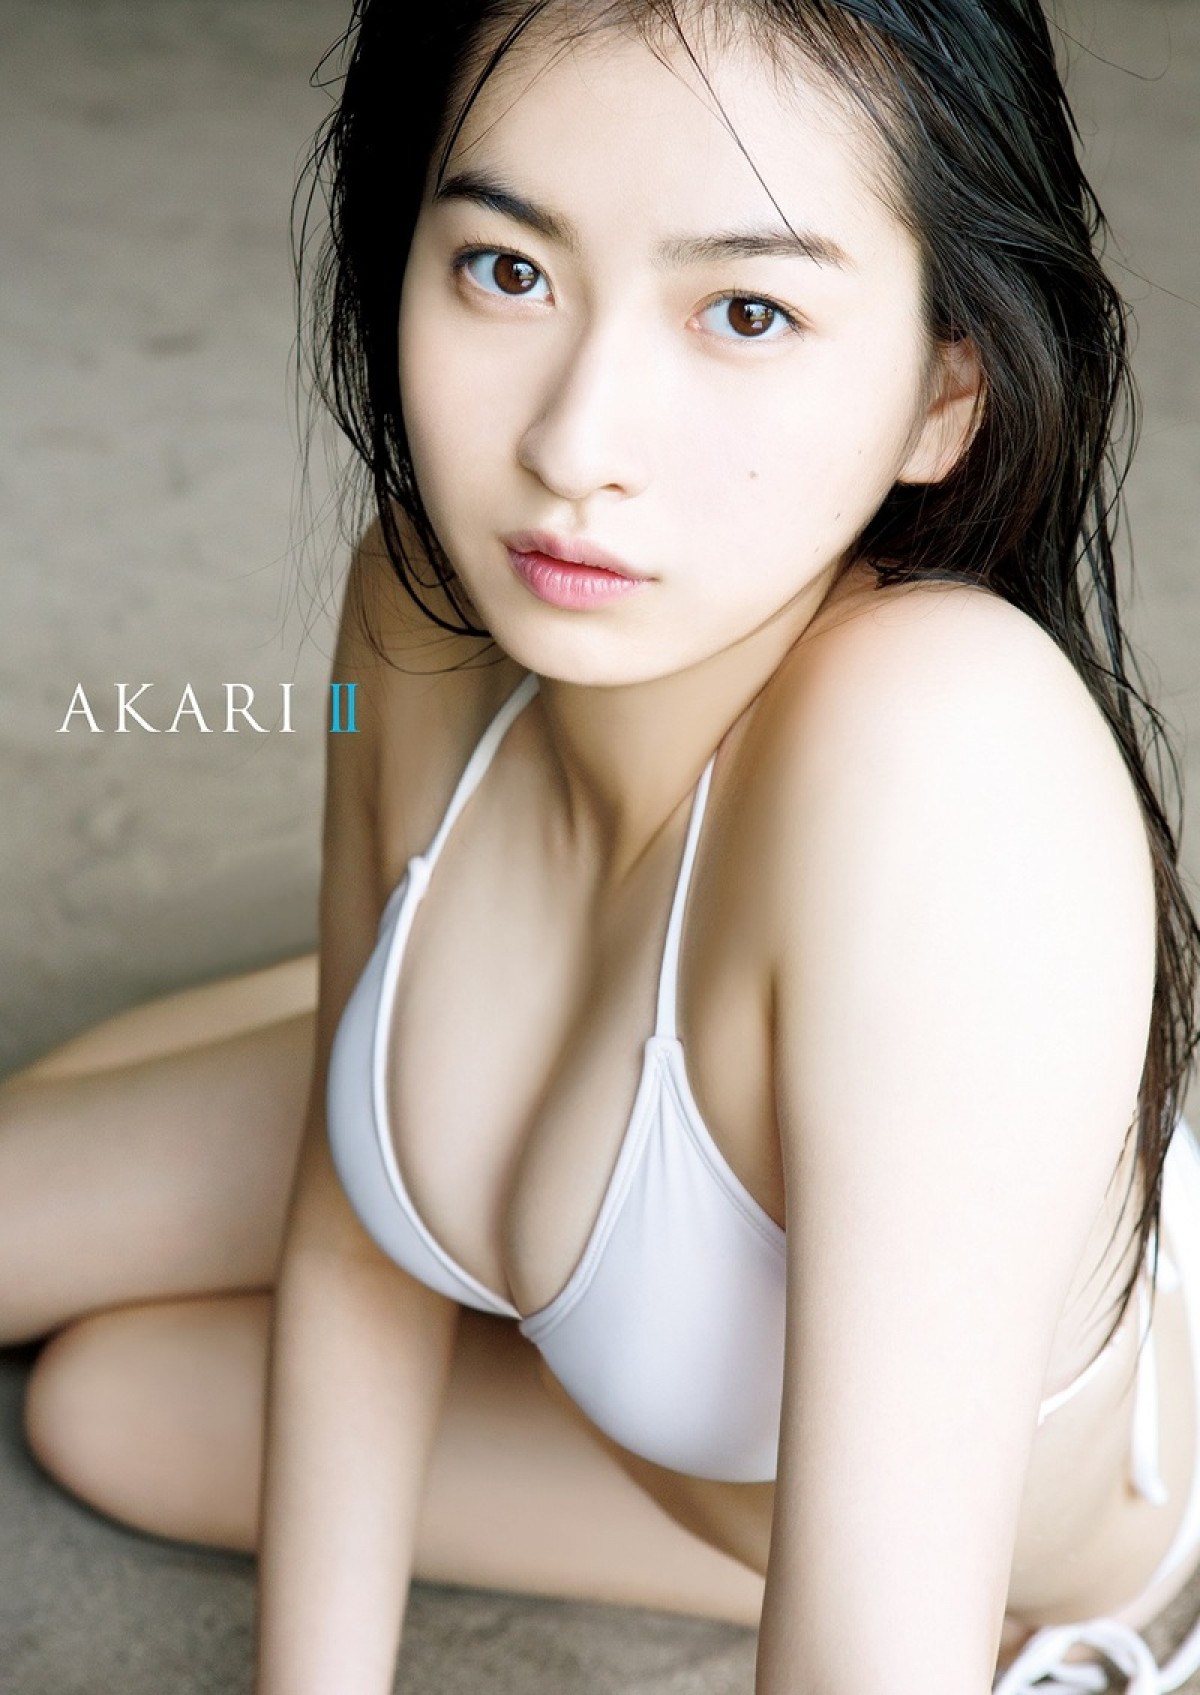 植村あかりファースト写真集『AKARI II』表紙ビジュアル